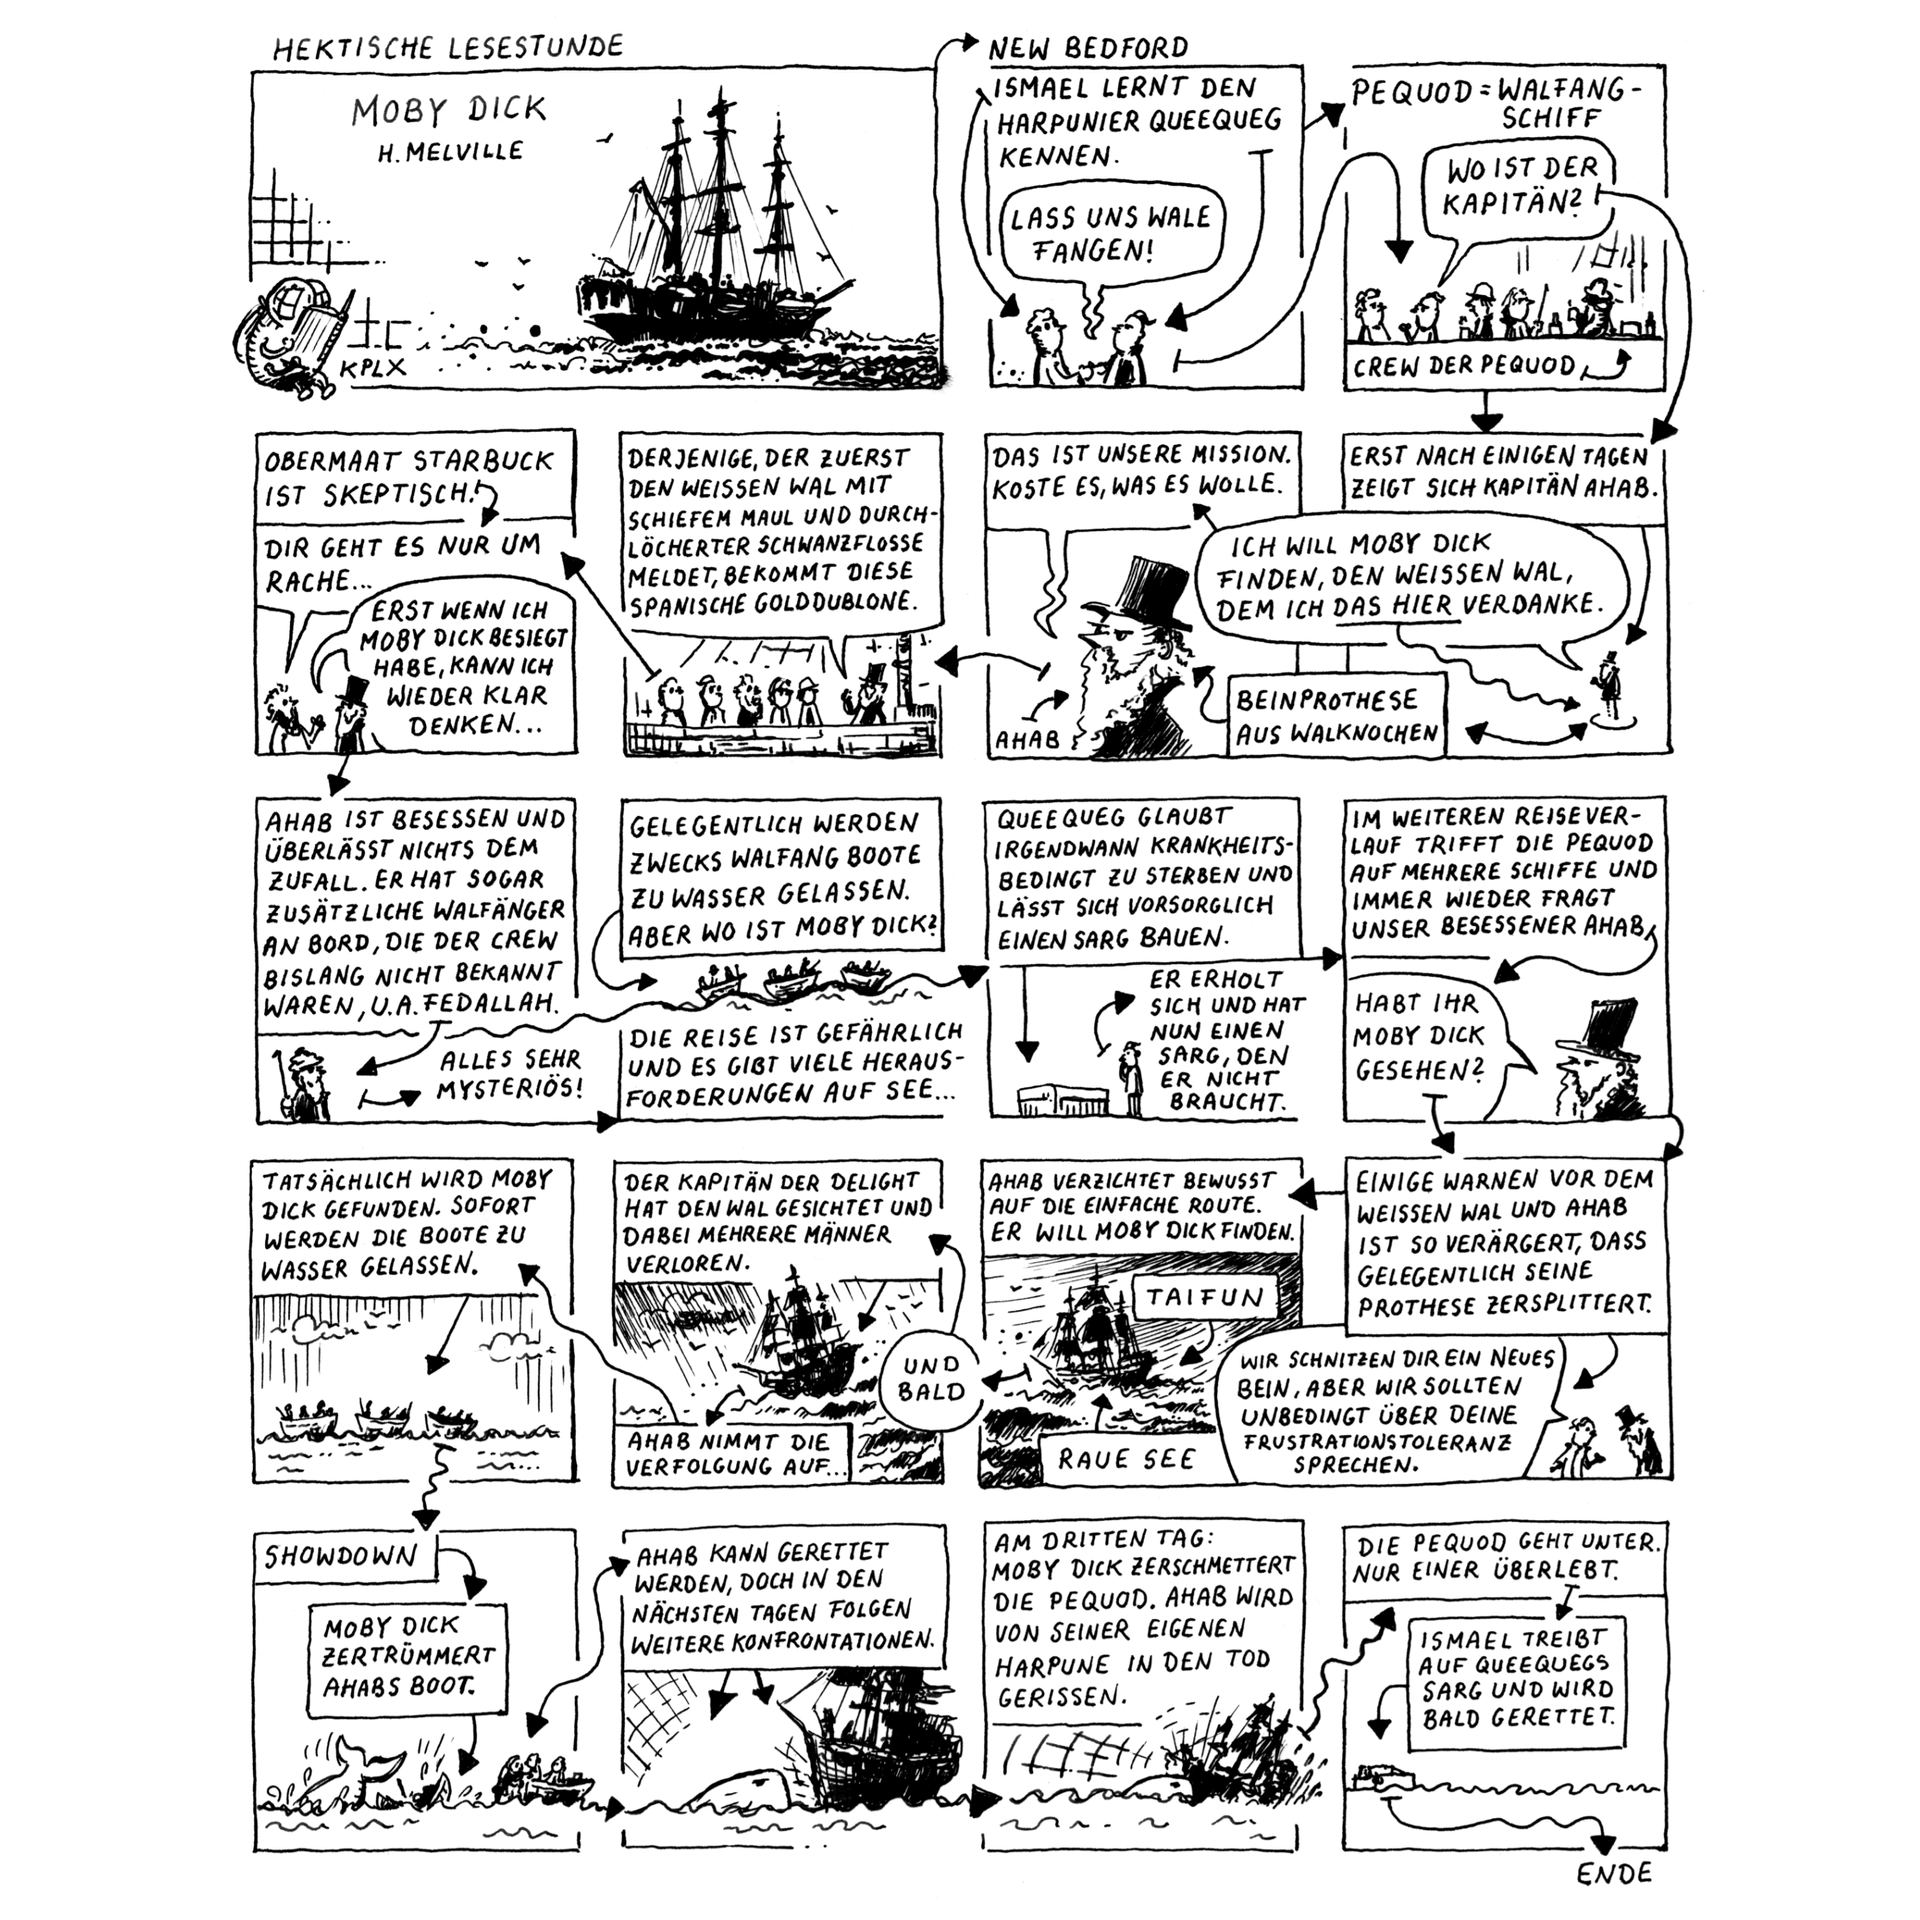 Eine A4 Seite erzählt hektisch eine Geschichte: Moby Dick